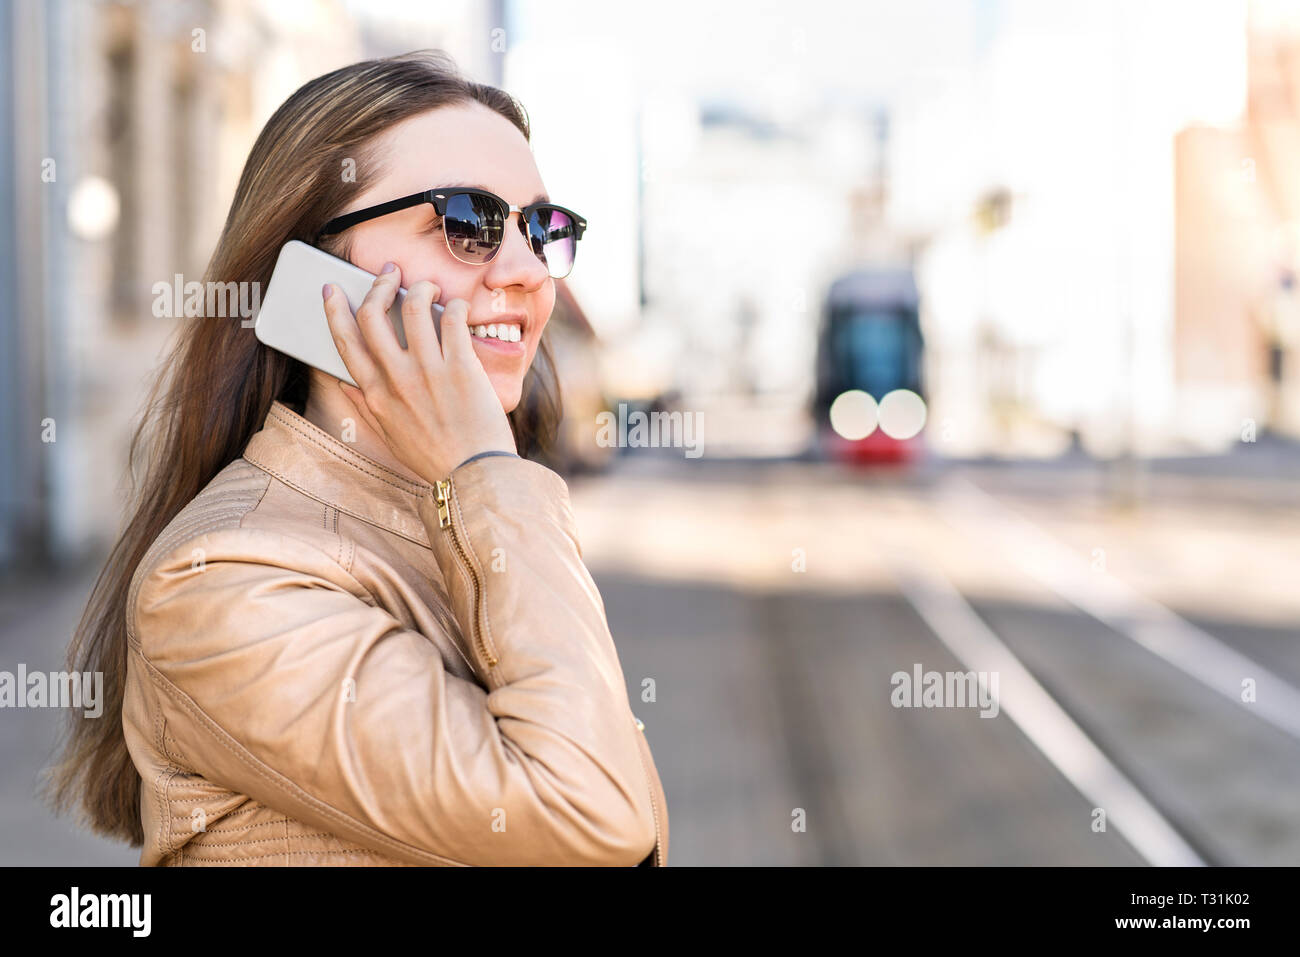 Junge Frau wartet auf Stadtzug und telefoniert. Der Fahrgast an der Straßenbahn hört mit dem Smartphone auf zu telefonieren. Öffentliche Verkehrsmittel und Kommunikation. Stockfoto